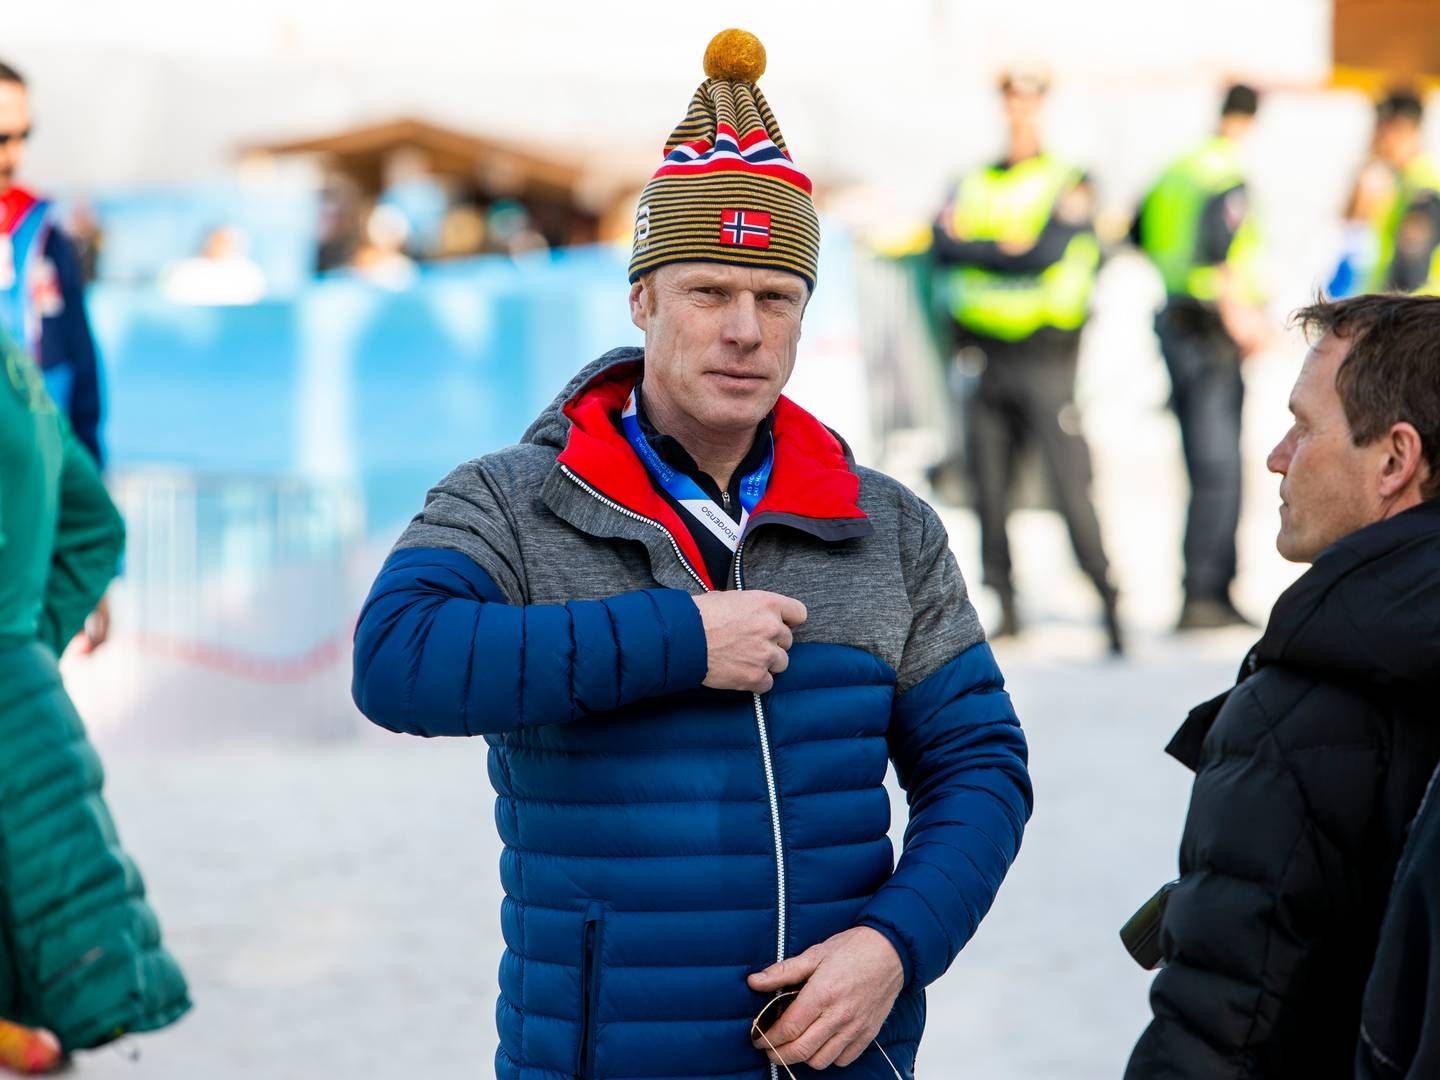 NYTT PROSJEKT: Bjørn Dæhlie har sammen med Rolf Arne Høyen og Rino Santocono sikret seg en utviklingstomt i Bodø. | Foto: Tore Meek, NTB